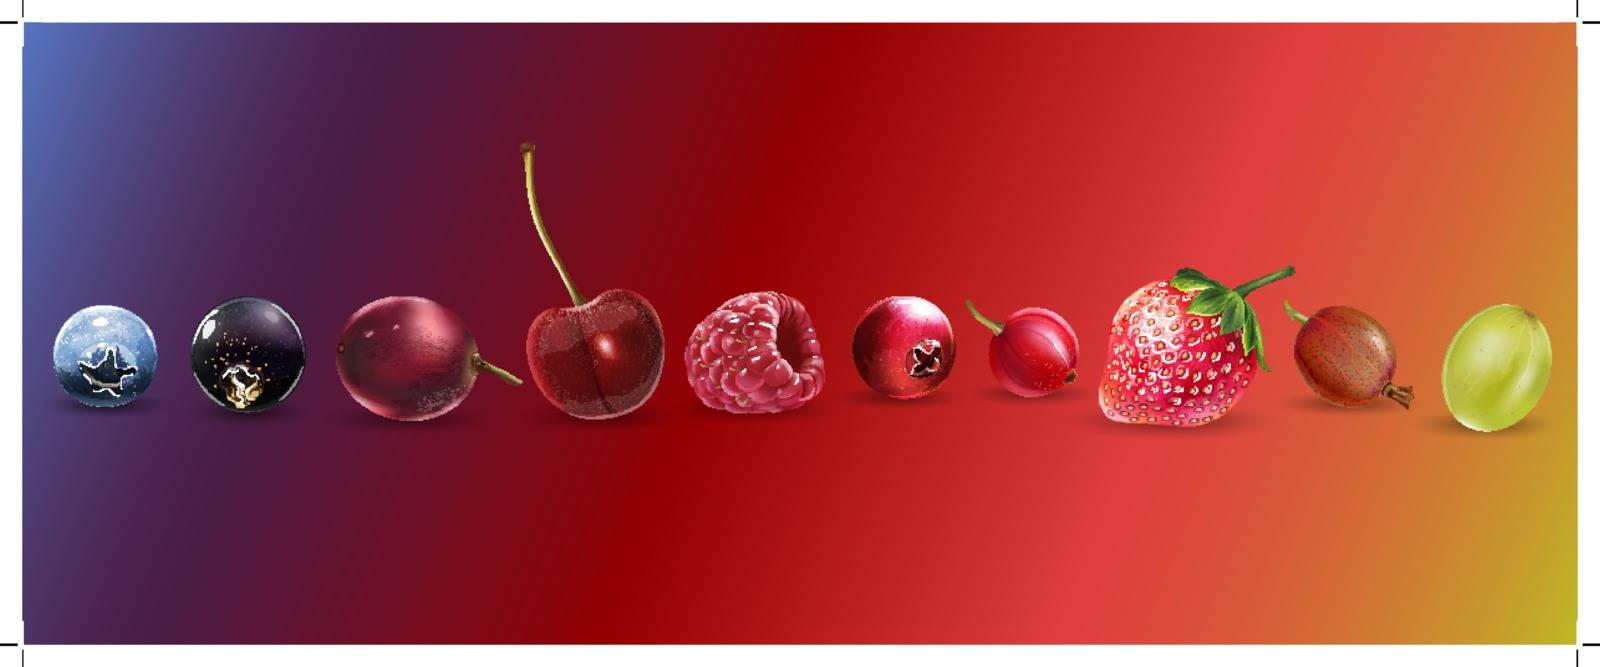 Cherries, strawberries, gooseberries, blueberries, raspberries, currants, blackberries, grapes and cranberries illustrations.